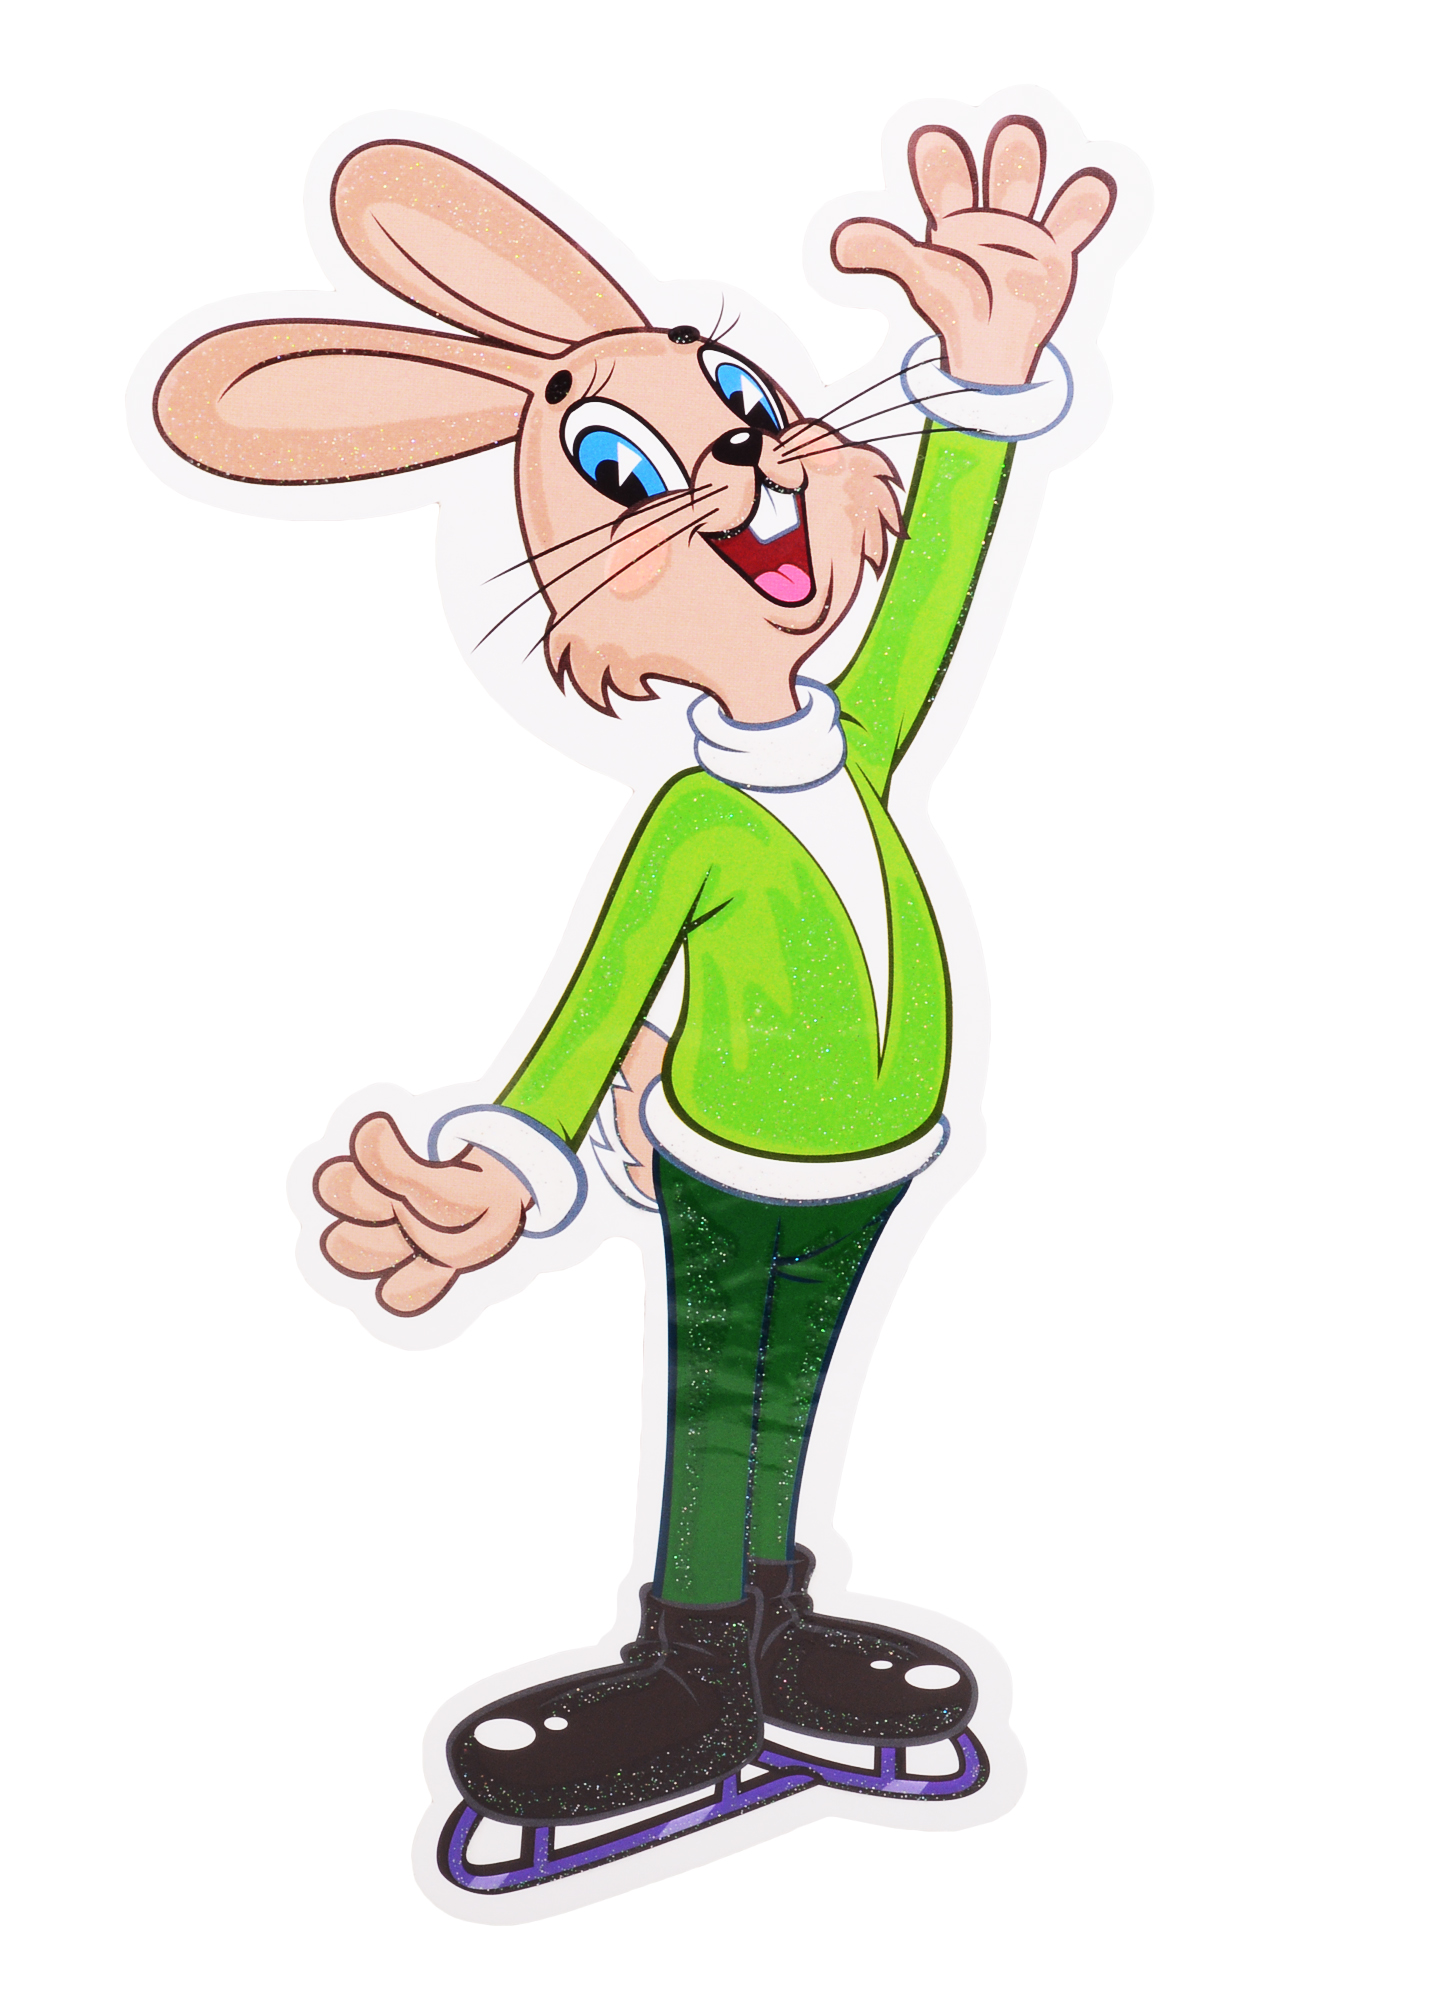 Плакат вырубной А4 Заяц фигурист из мультфильма Ну, погоди! значок pinpinpin смф заяц из ну погоди